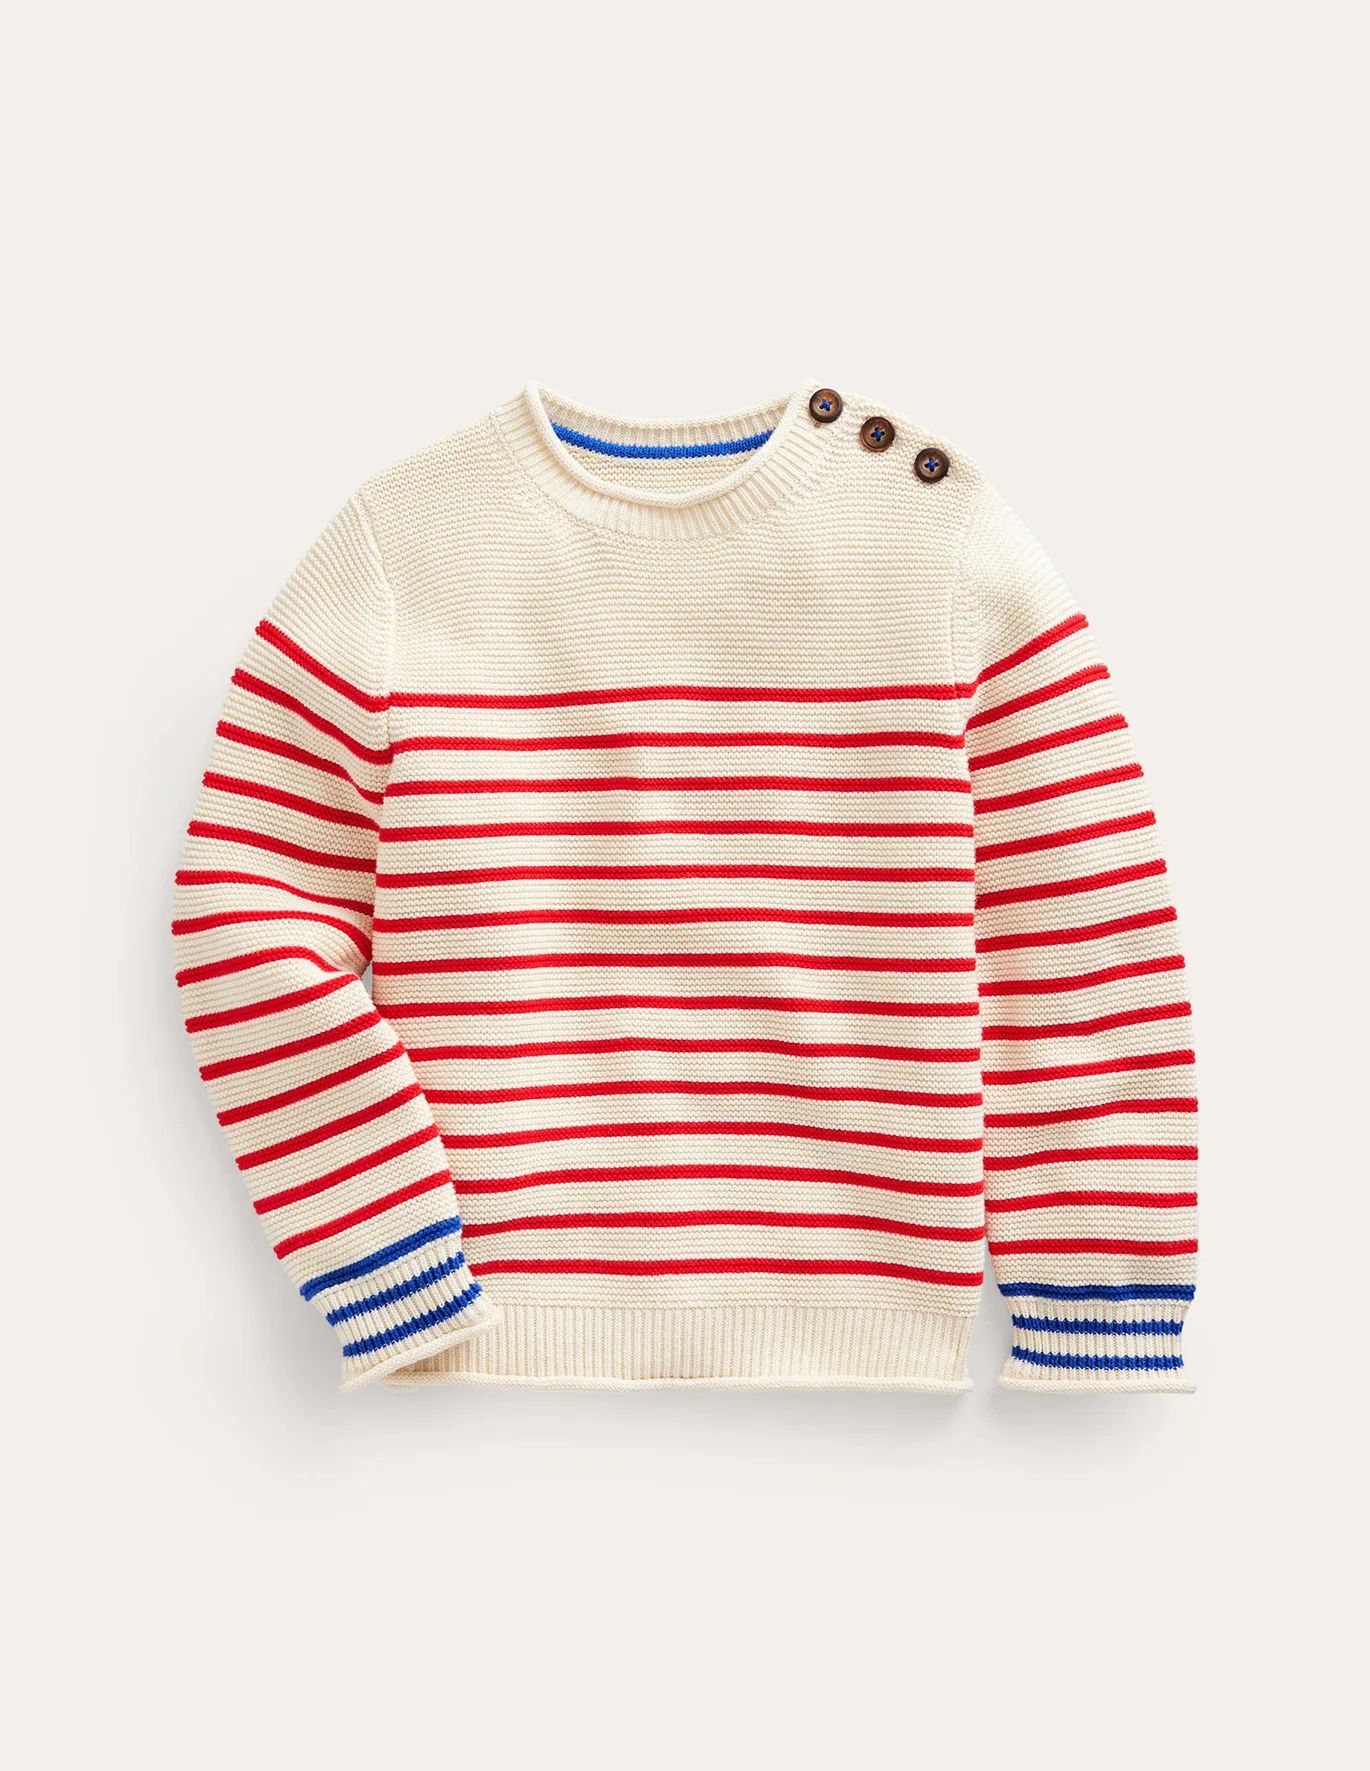 Nautical Stripe Sweater - Ecru Marl and Jam Red Stripe | Boden (US)